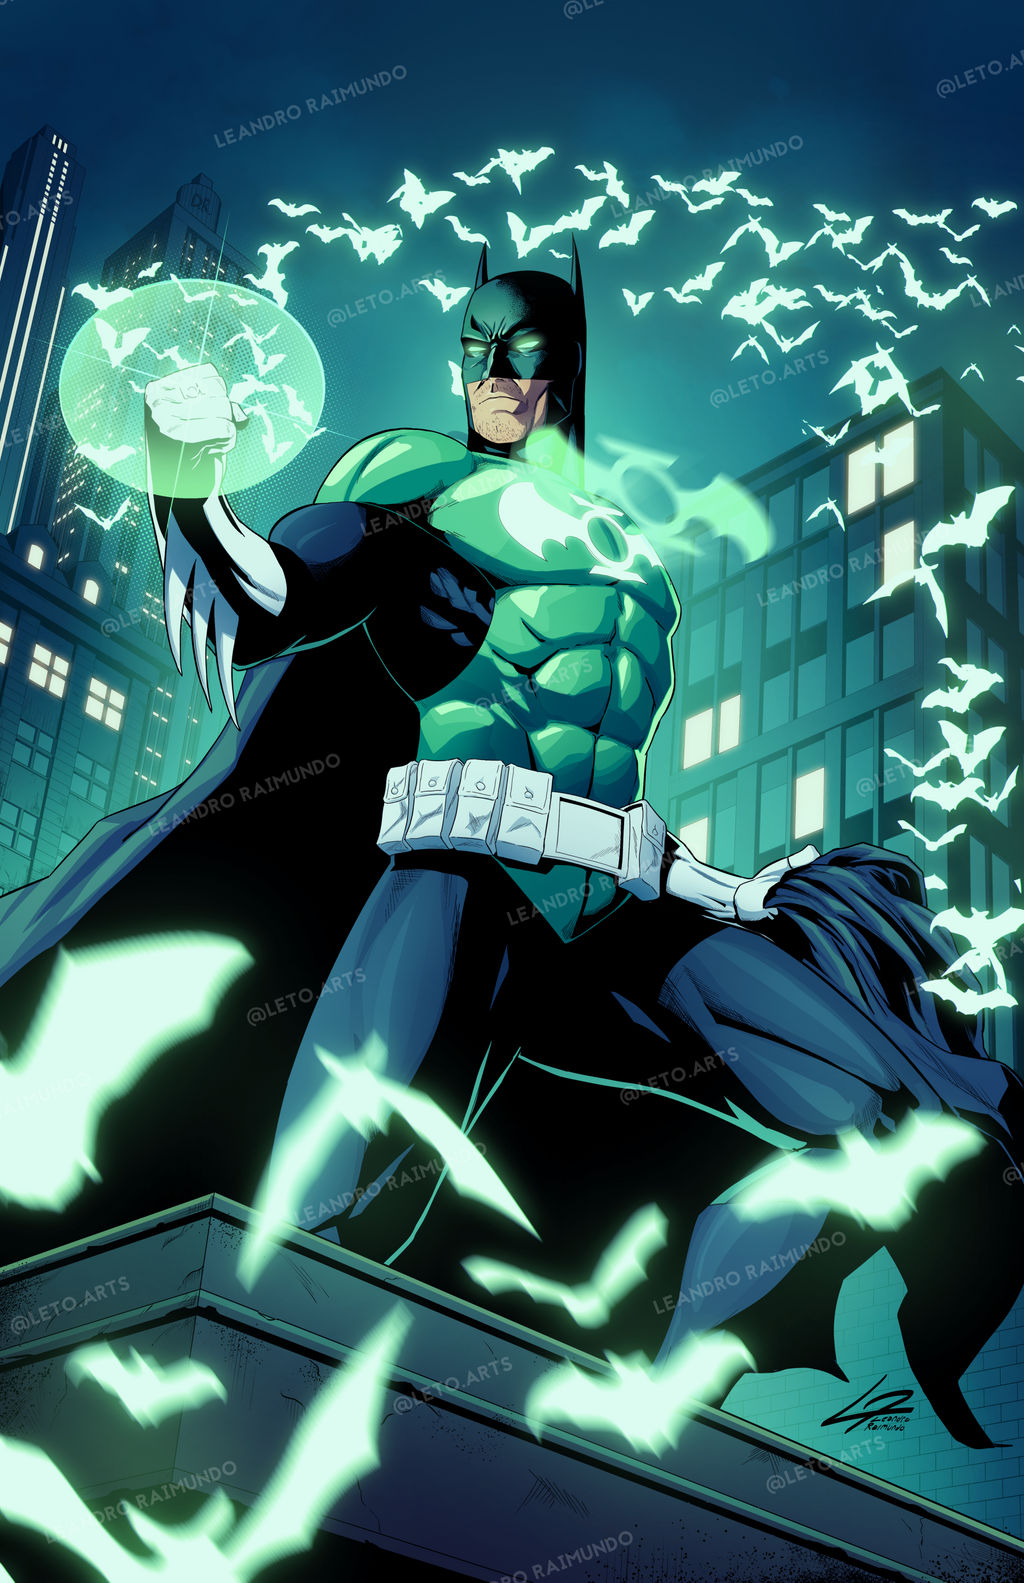 Green Lantern Batman commission by LetoArt on DeviantArt